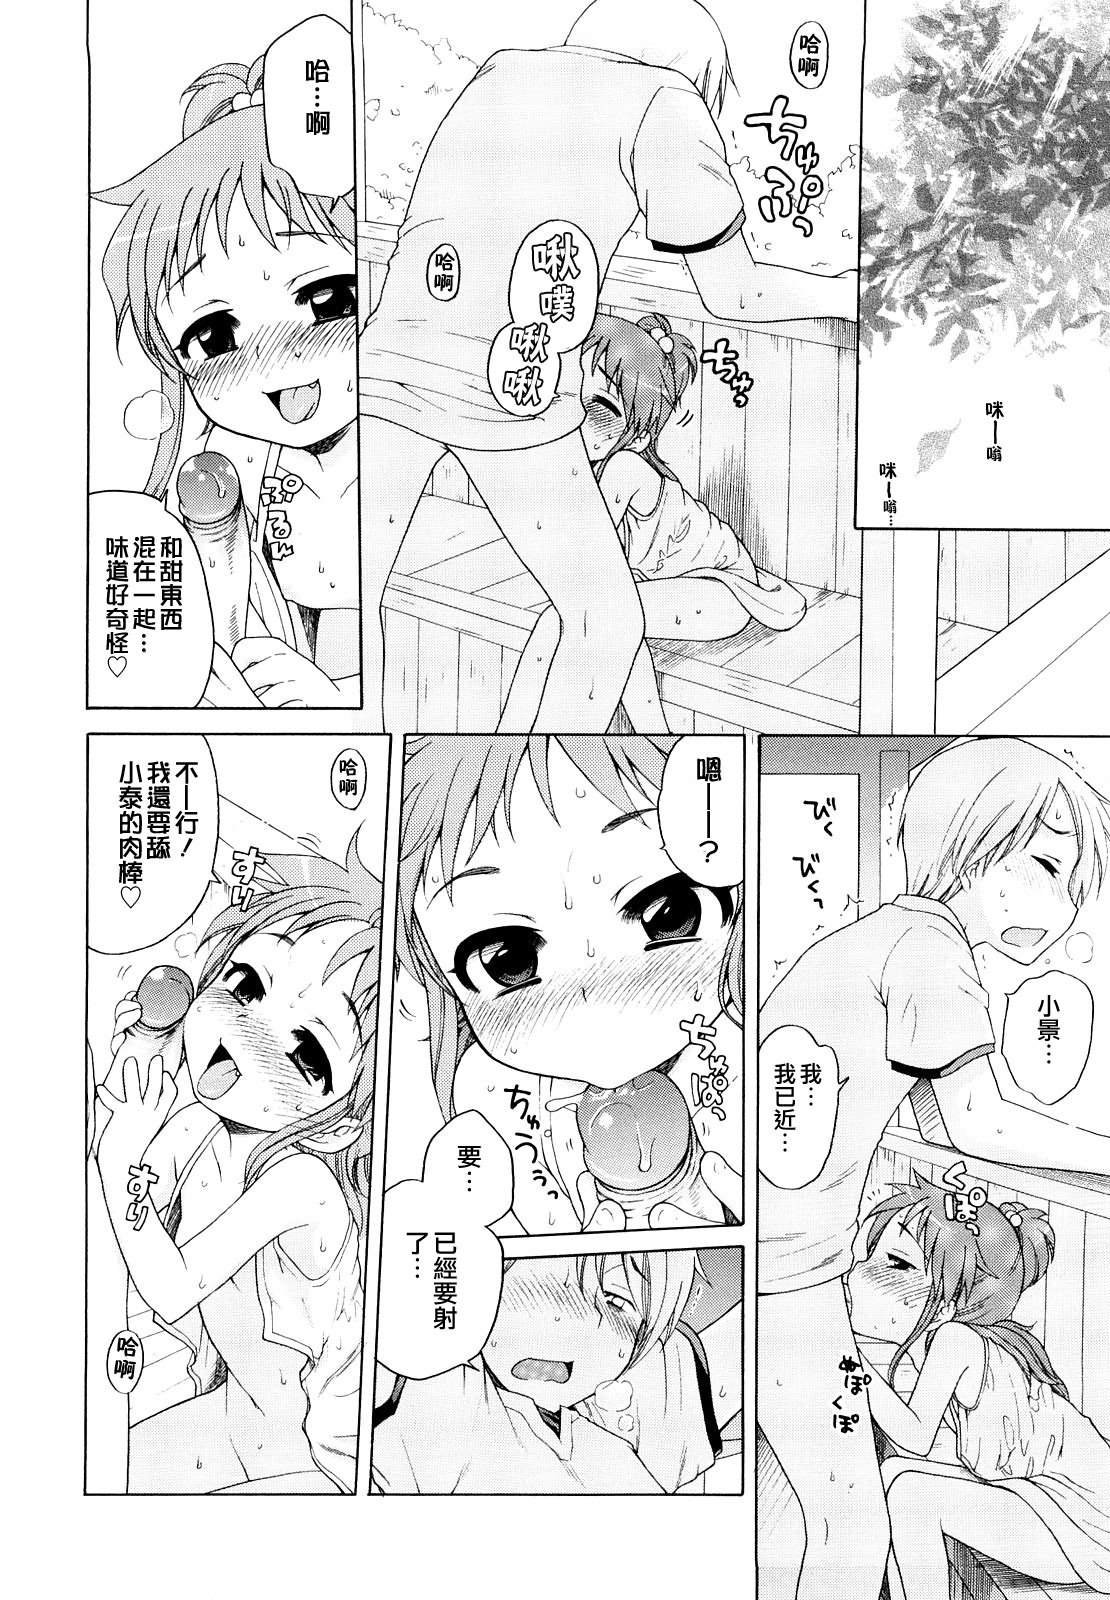 Порно комикс onii chan фото 118